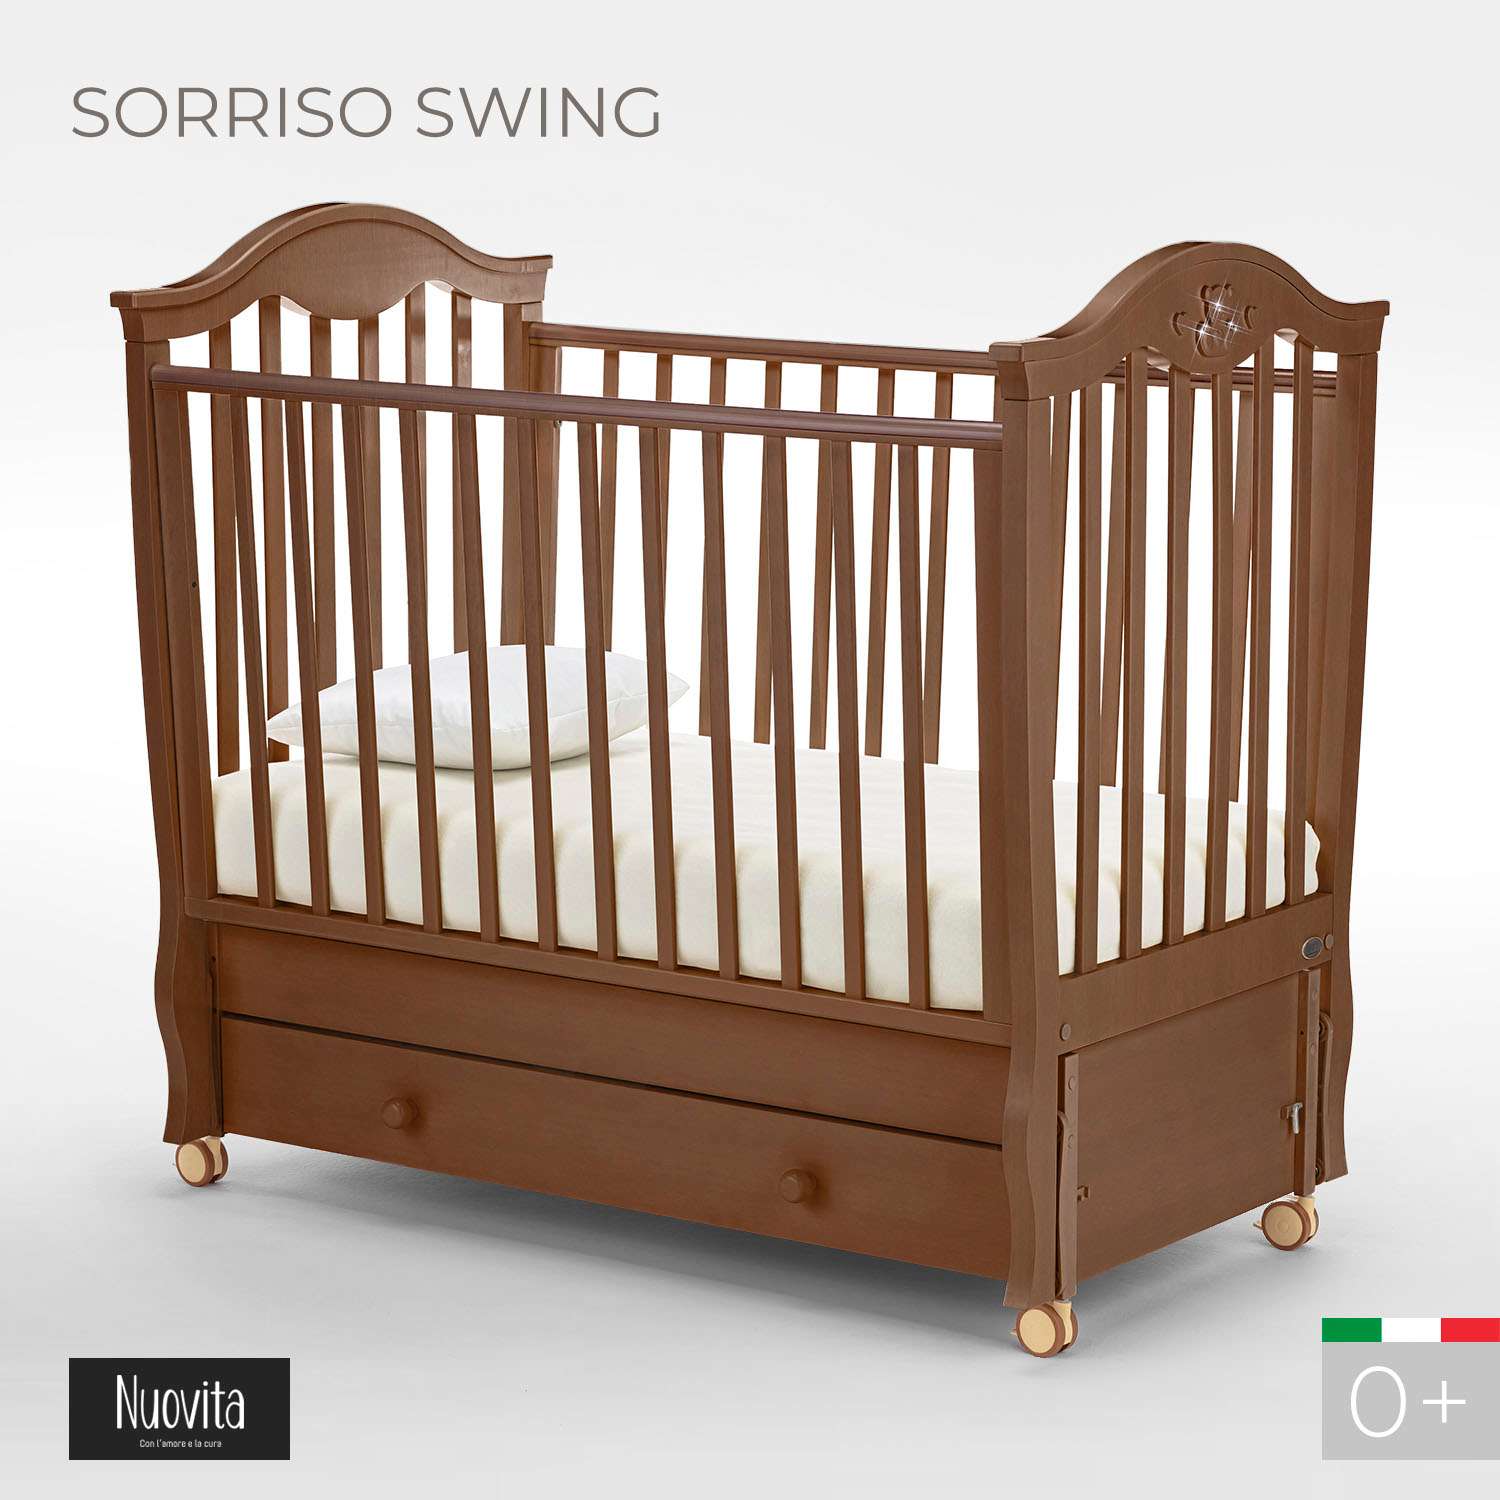 Детская кроватка Nuovita Sorriso Swing прямоугольная, поперечный маятник (темный орех) - фото 2